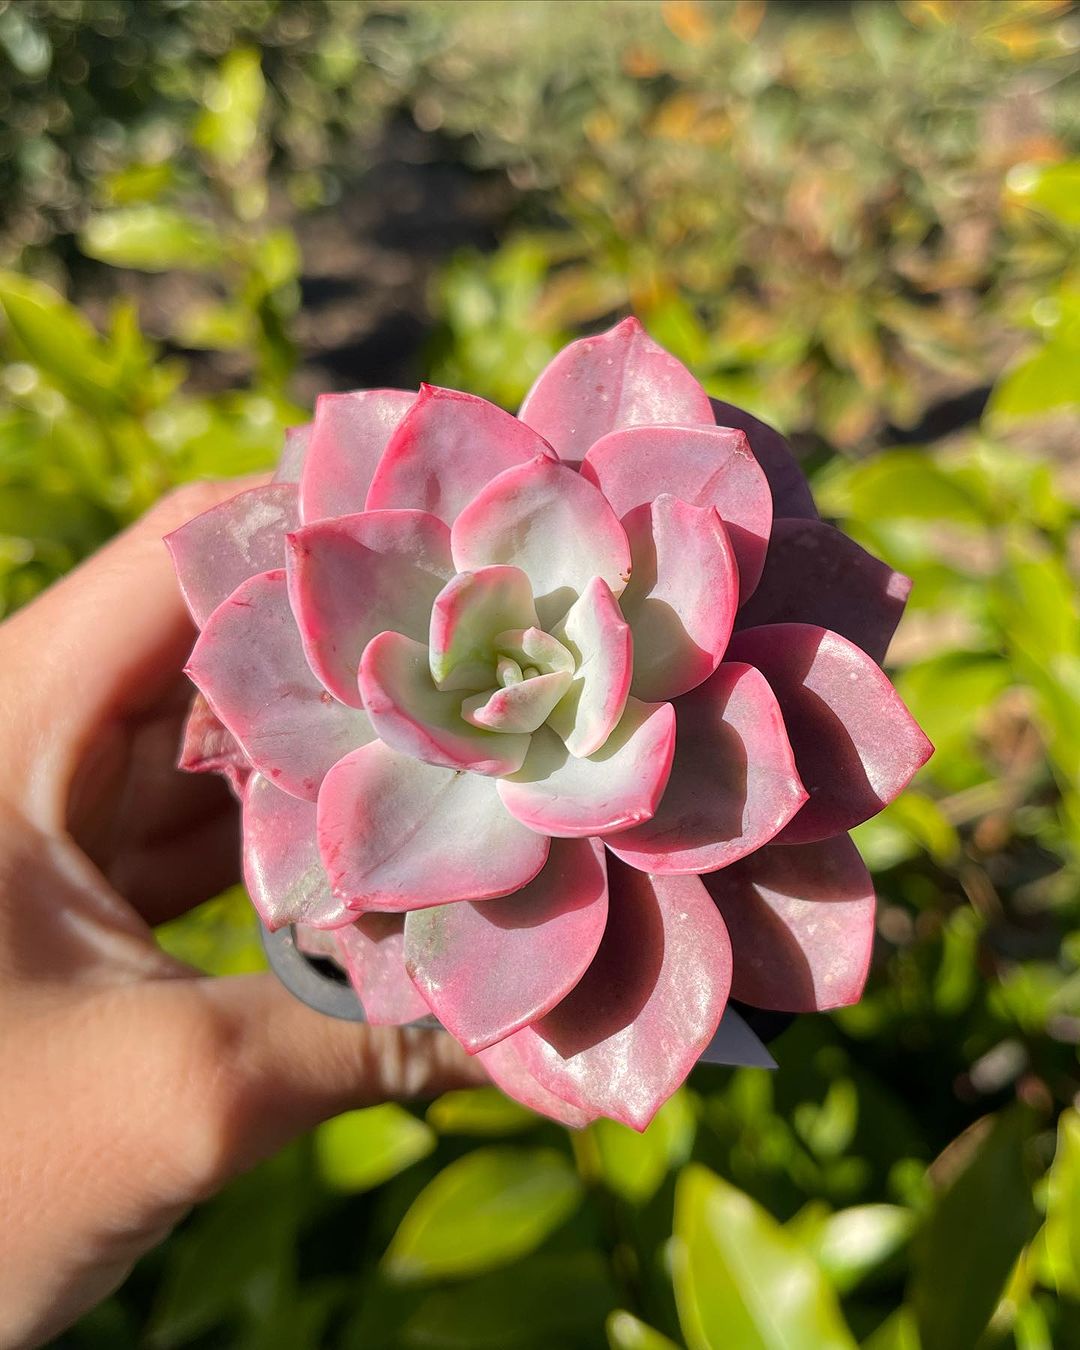 Echeveria 'Pink Harin' variegated